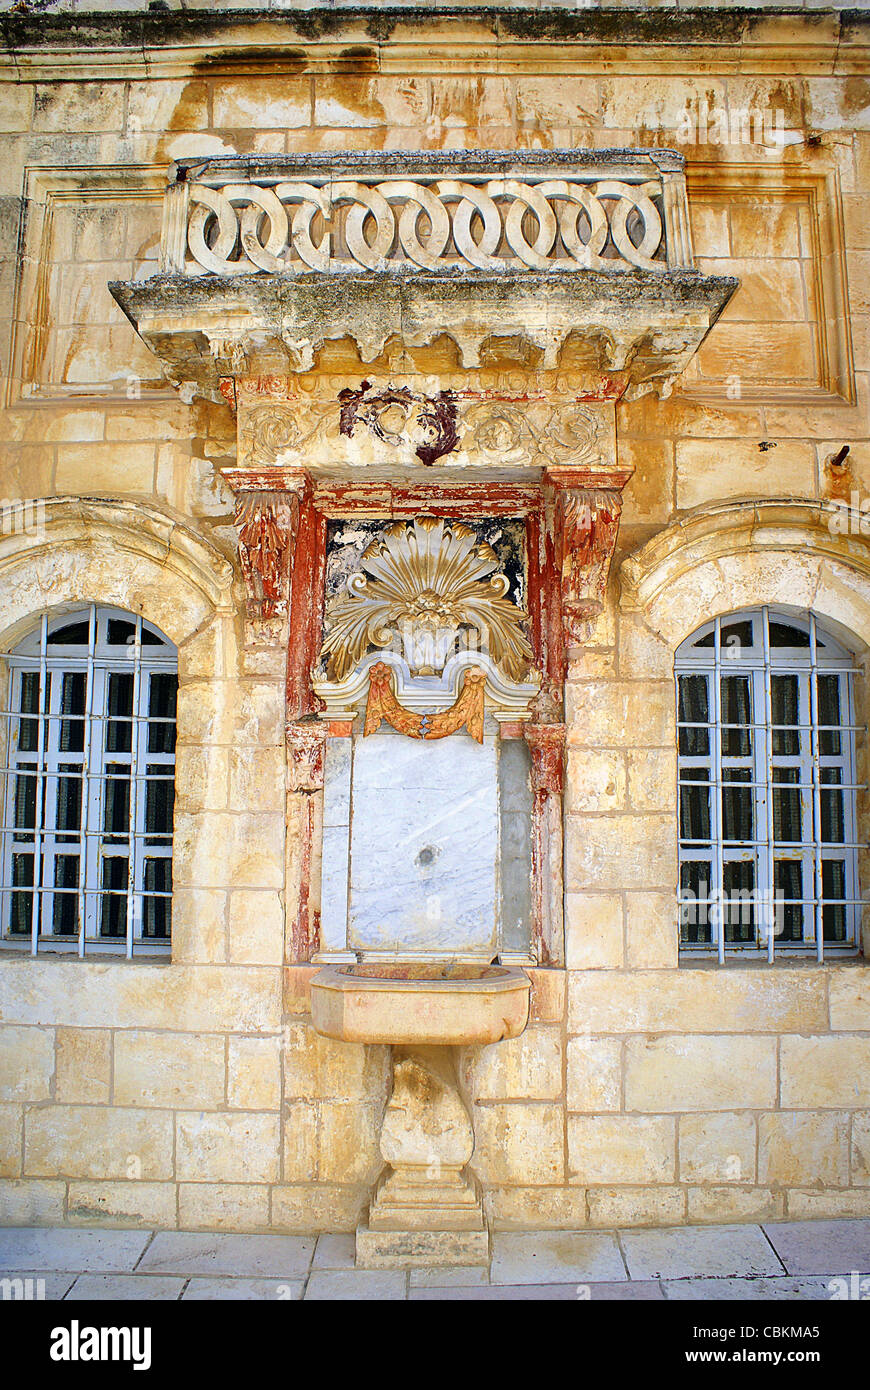 Vieille ville de Jérusalem célèbre fontaine, Israël Banque D'Images